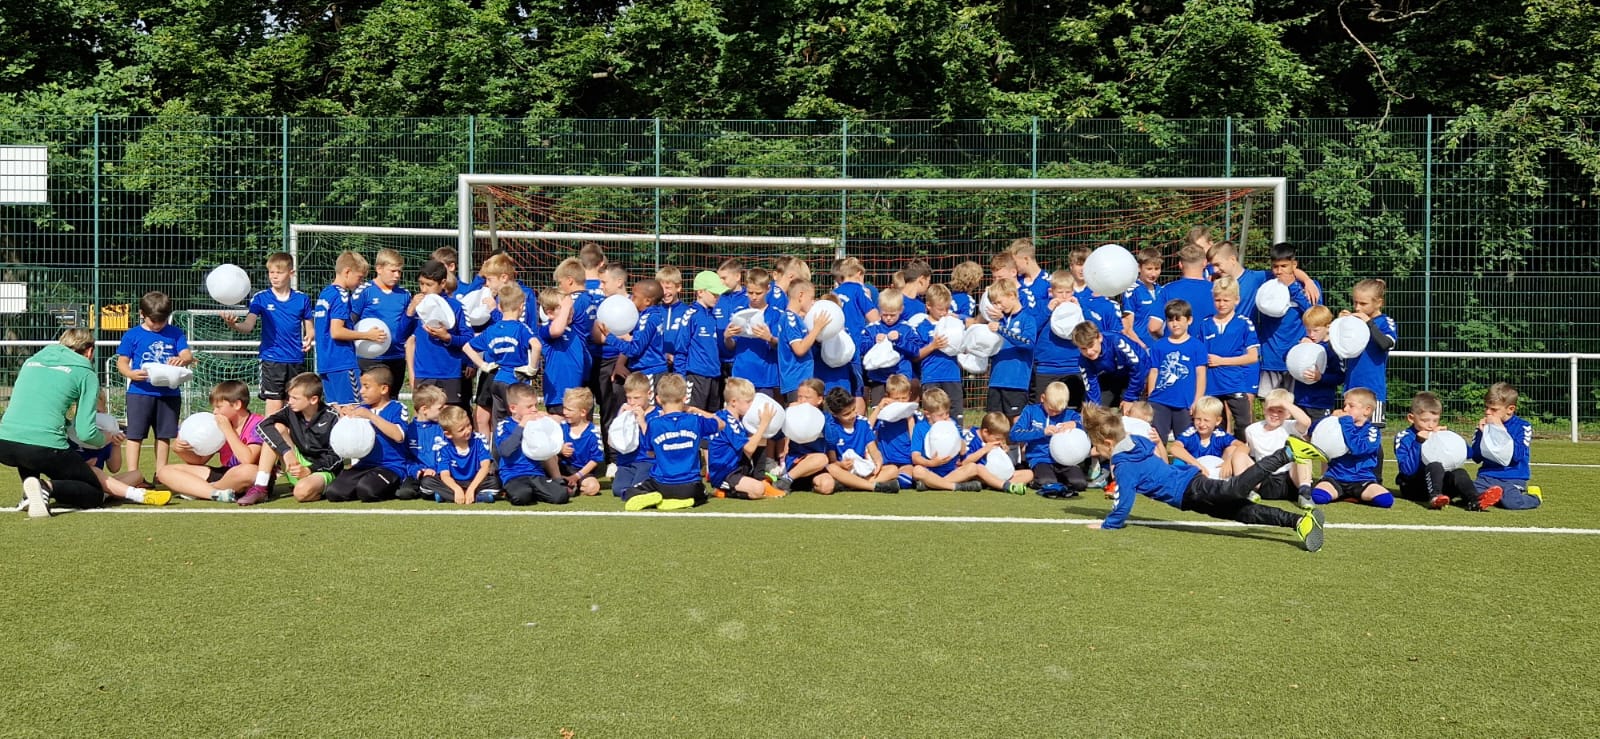 Read more about the article Original DFB-Pokal und gesunde Ernährung im Boddenhus der Volkssolidarität Nordost sorgt für begeisterte Kinder im Fußballcamp von Blau-Weiß Greifswald